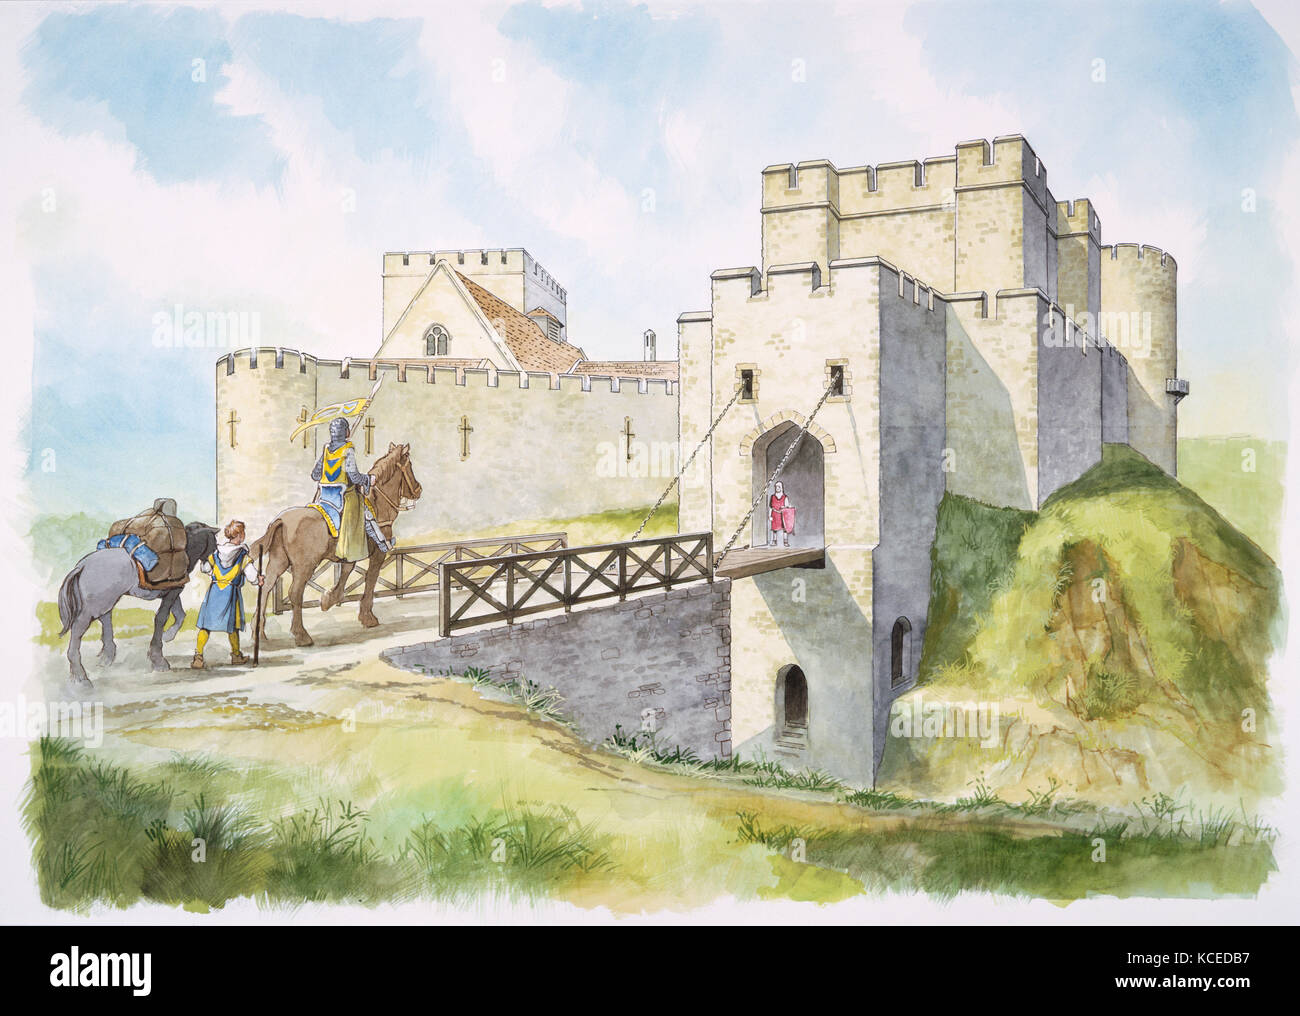 Helmsley castle, North Yorkshire. dessin de reconstruction par philip corke de la porte sud au 13e siècle. pont-levis, chevalier, page / Squire. Banque D'Images